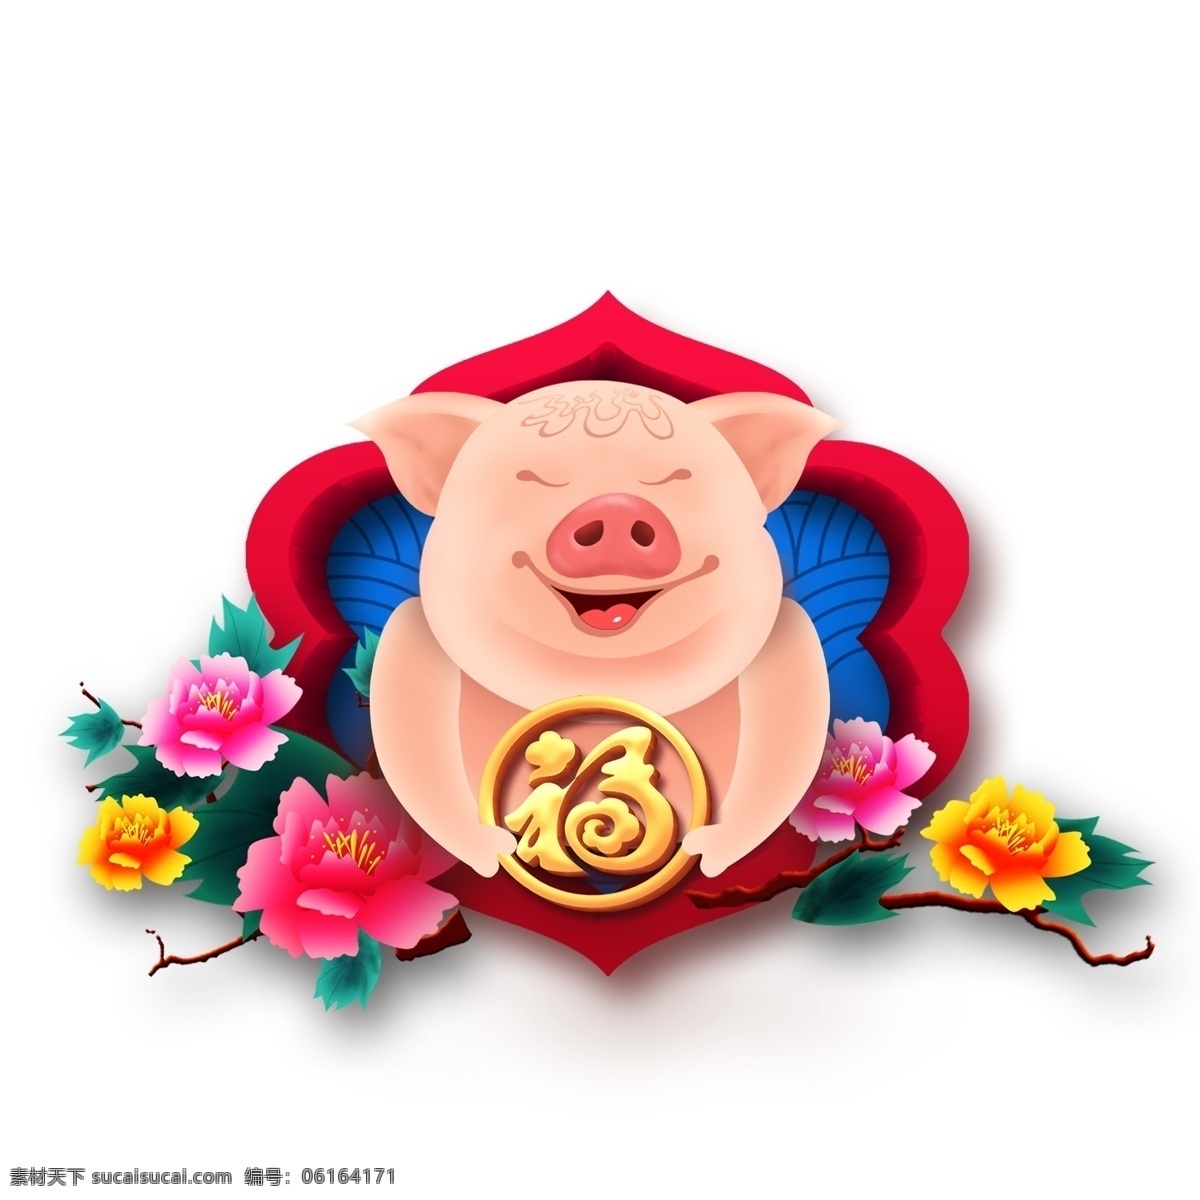 2019 猪年 传统 元素 花朵 福字 装饰图案 创意元素 手绘元素 牡丹 新年 猪年元素 元素设计 psd元素